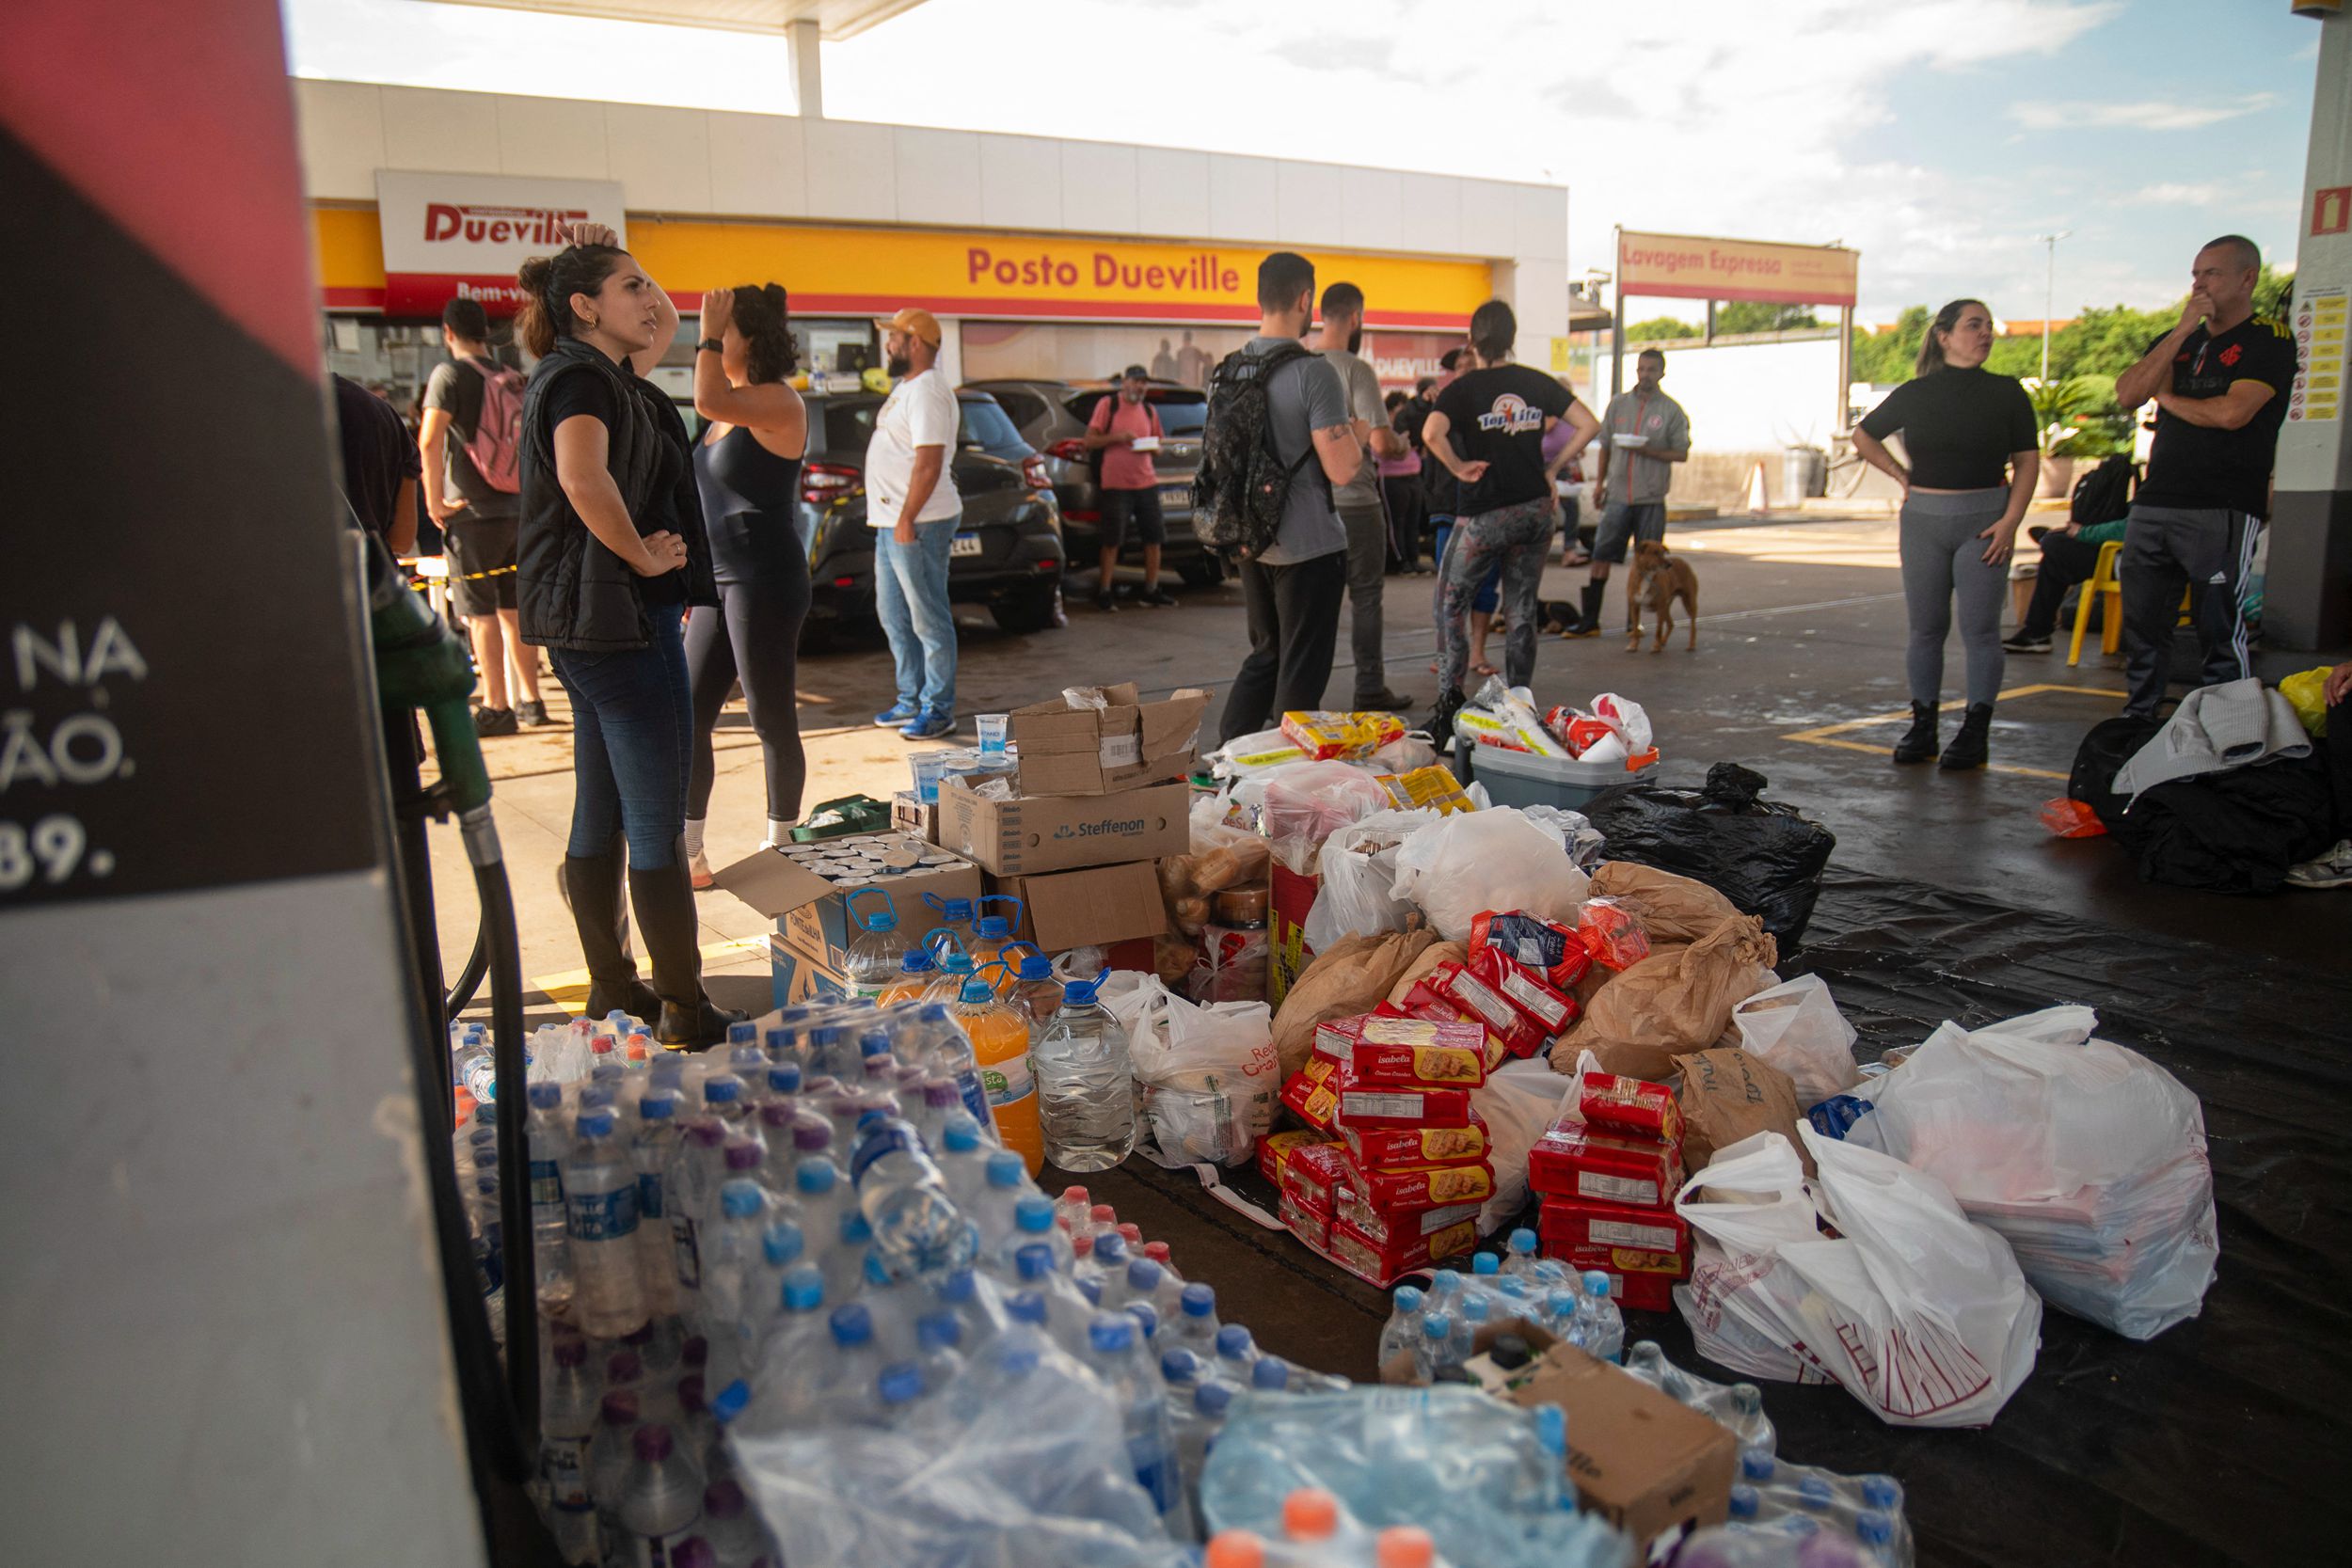 Ảnh chụp hôm 05/05/2024 tại một trạm xăng ở thành phố Porto Alegre, tiểu bang Rio Grande do Sul, Brazil, các tình nguyện viên cung cấp thực phẩm, chăm sóc y tế, và quần áo cho những người dân bị ảnh hưởng bởi thiên tai. (Ảnh: Carlos Fabal/AFP via Getty Images)